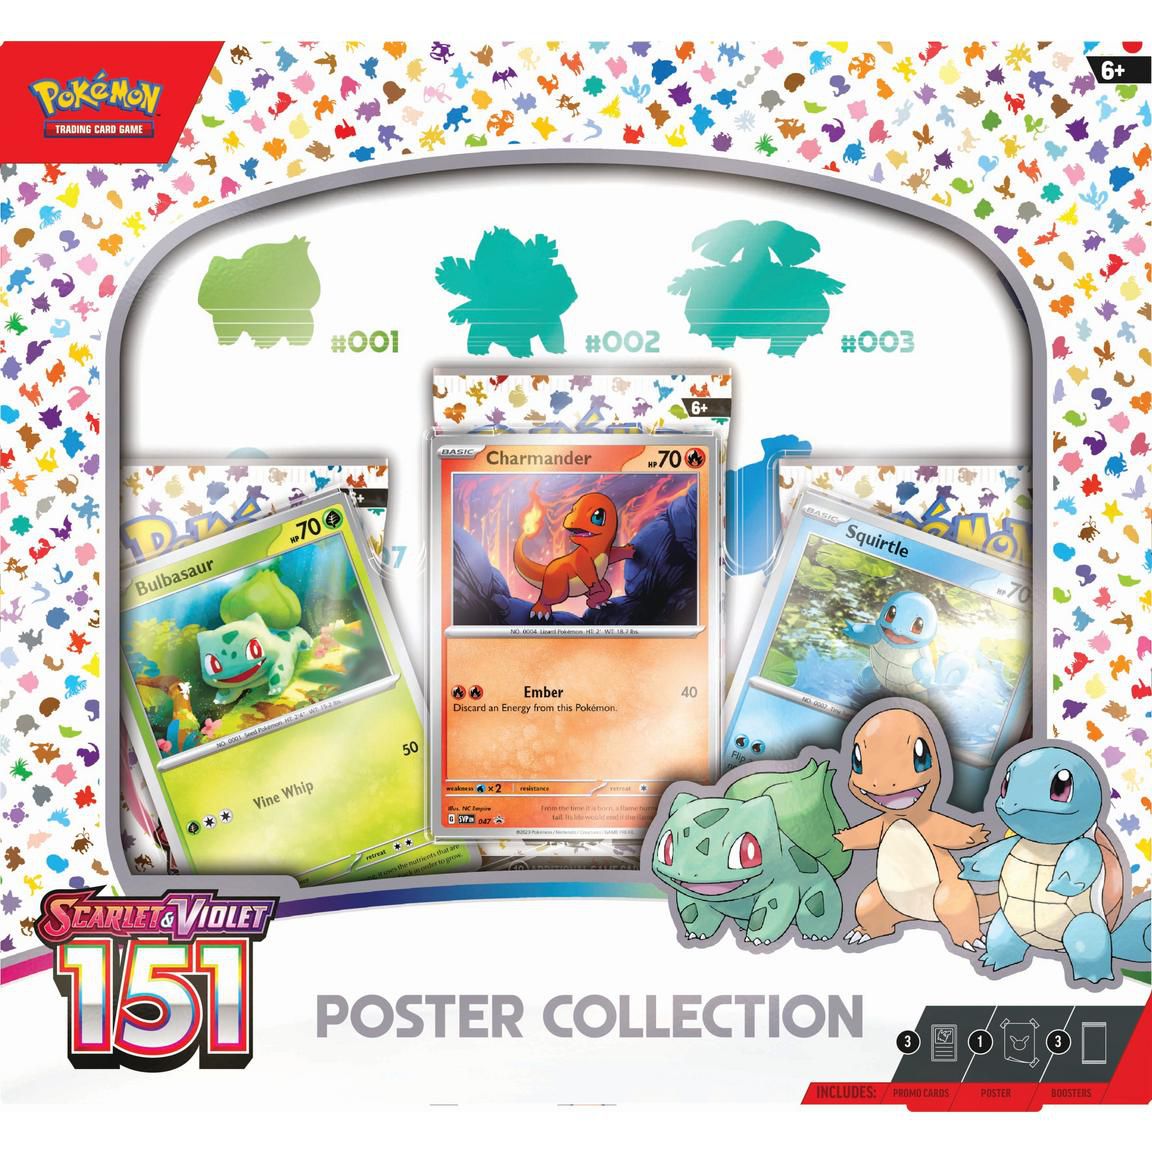 Una caja de la colección de pósters de Pokémon Scarlet y Violet: 151 Collection TCG, que incluye tres cartas de Bulbasaur, Charmander y Squirtle.